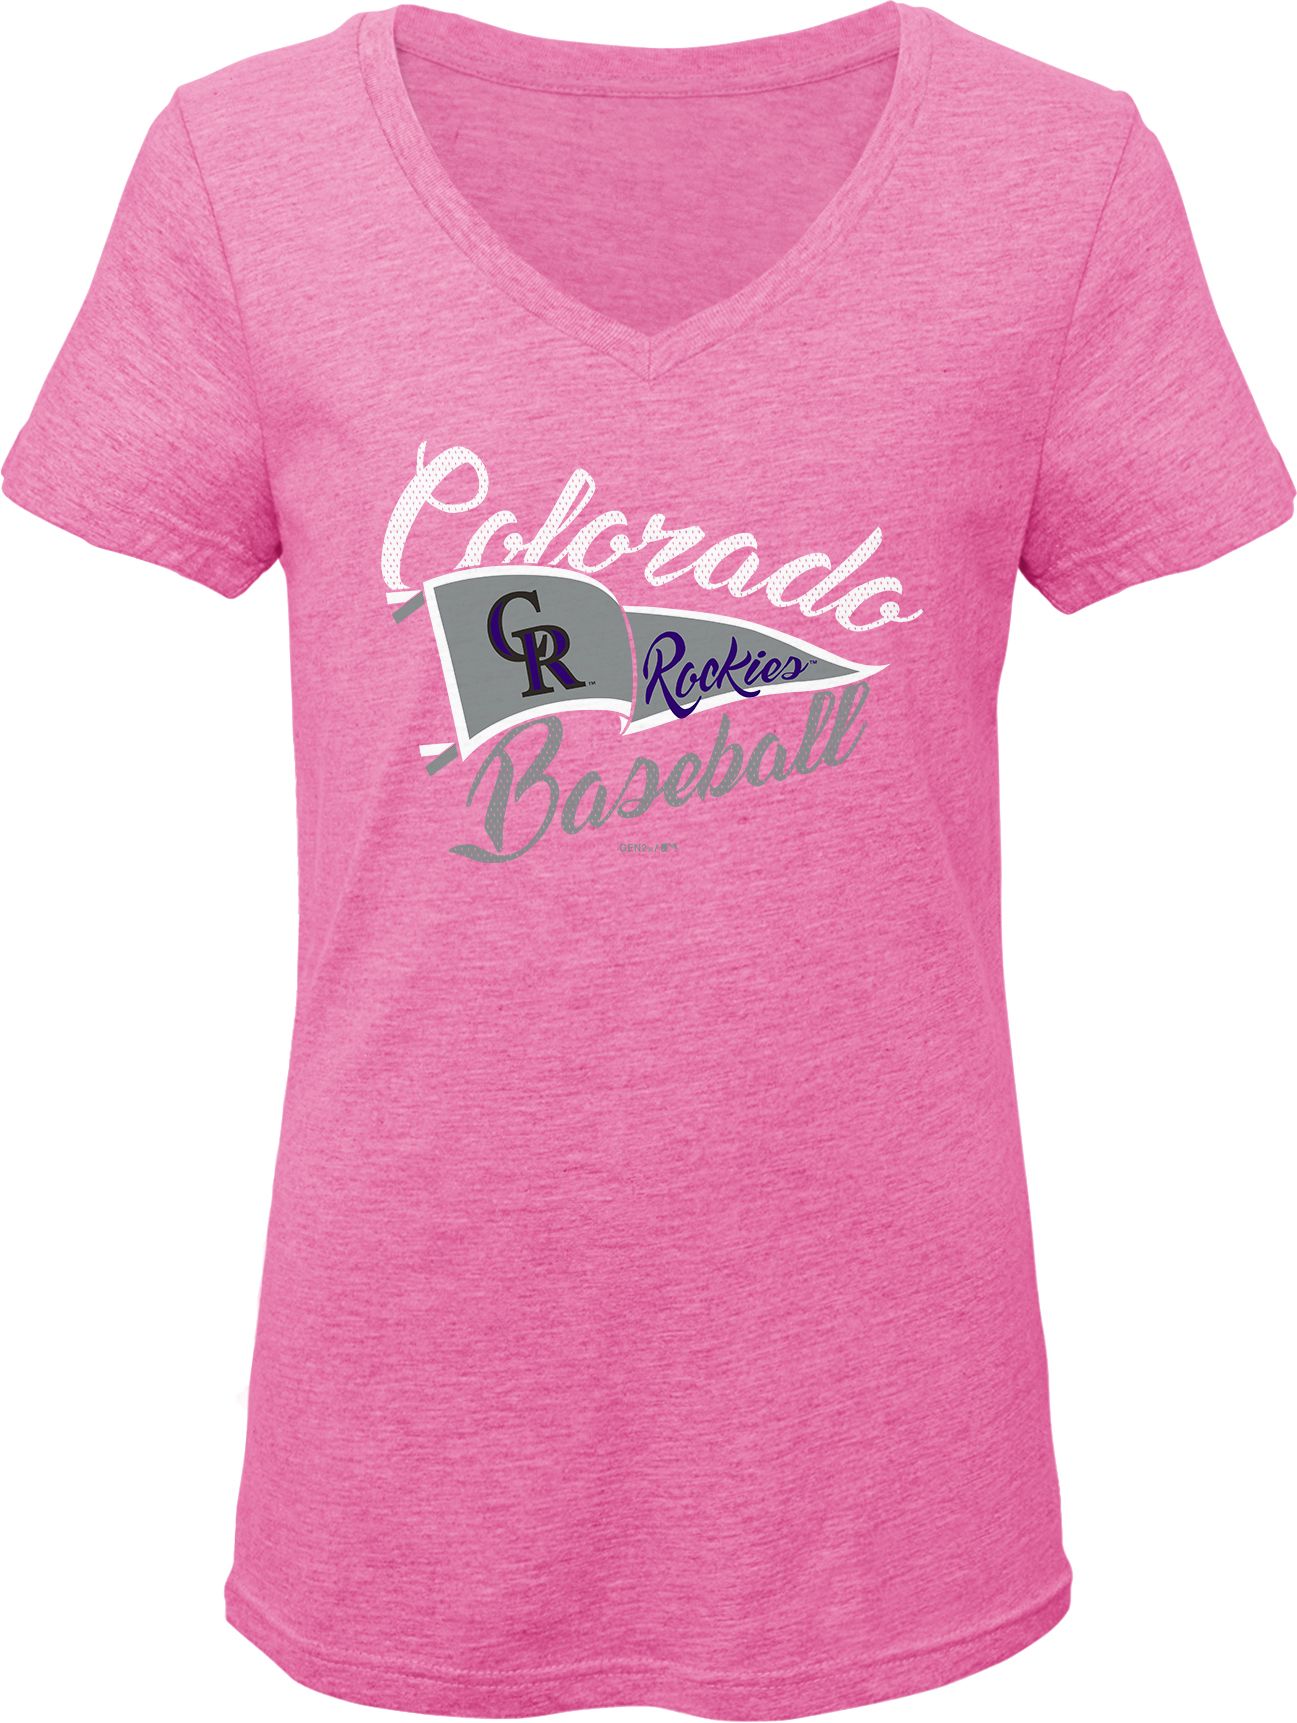 colorado rockies pink apparel